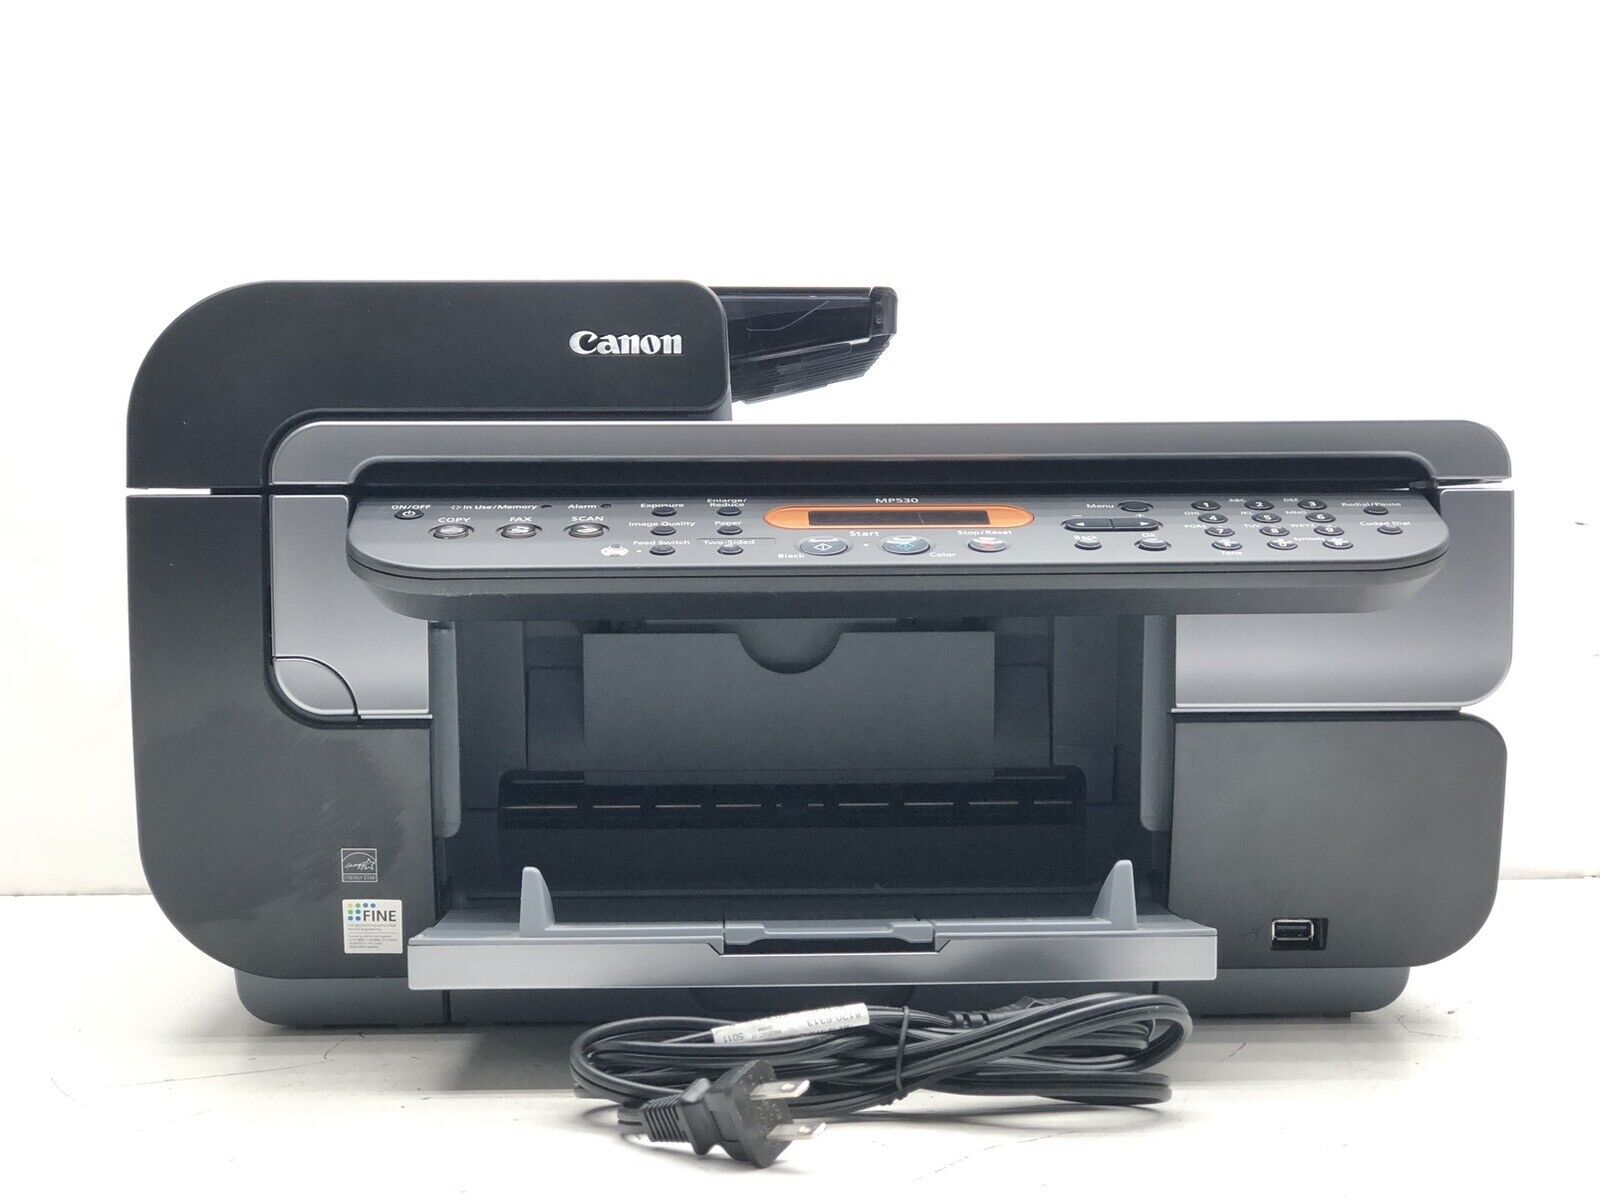 Canon Pixma MP530 Office All-In-One Printer